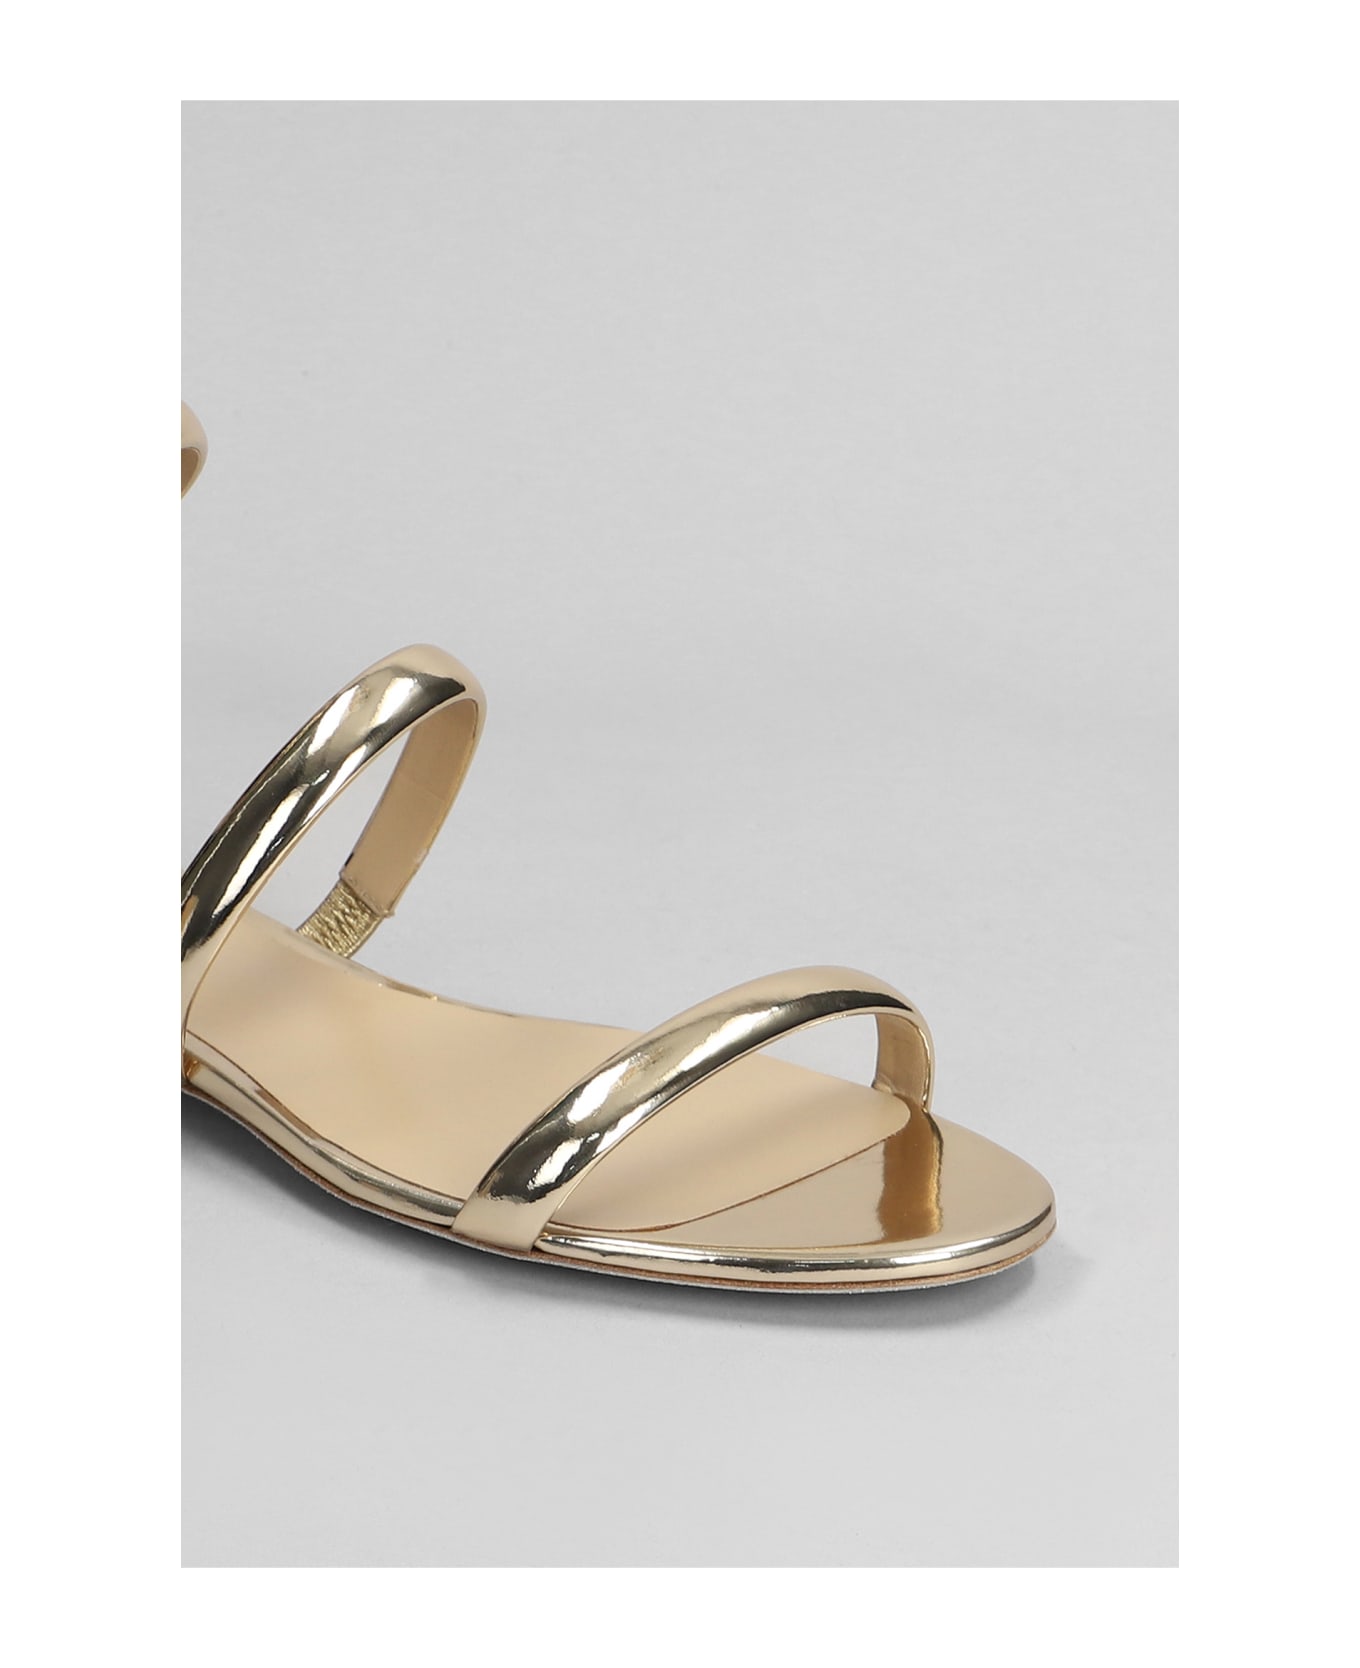 René Caovilla Serpente Sandals In Gold Leather - Gold サンダル